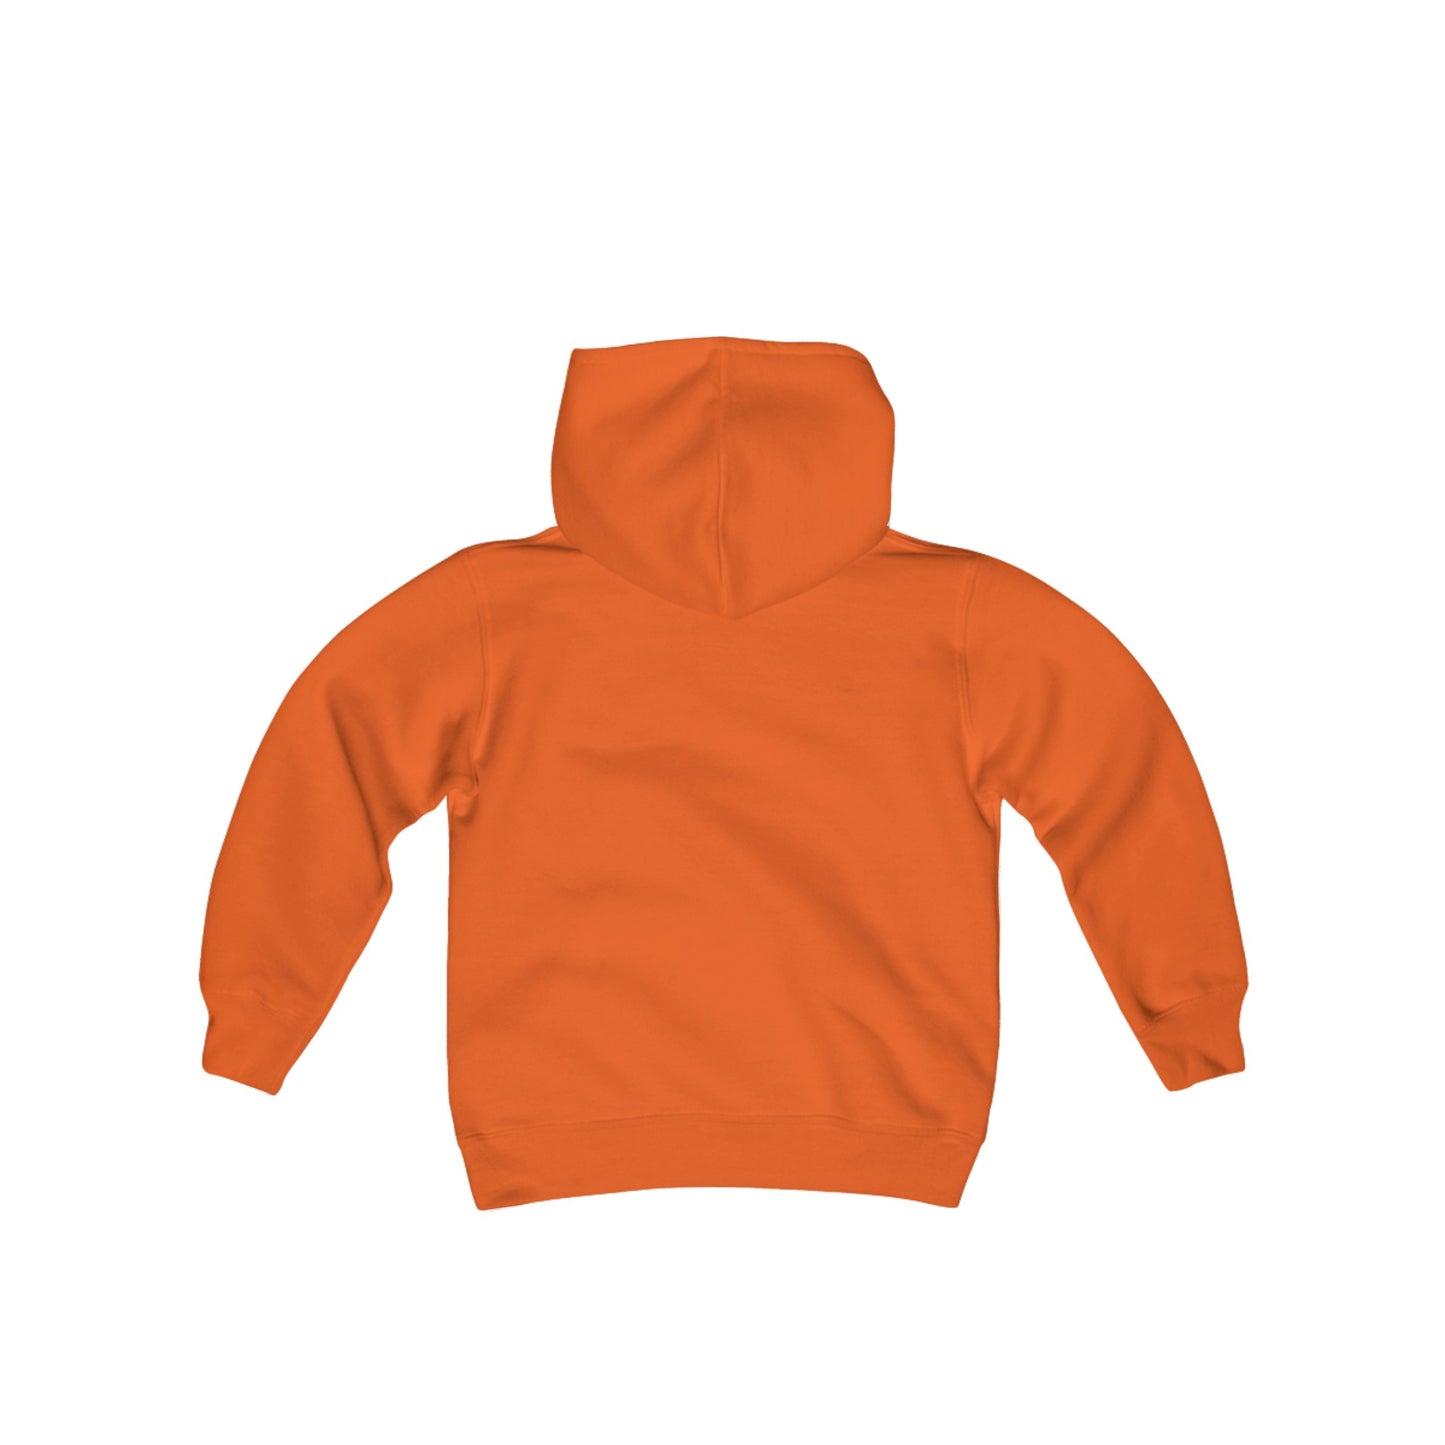 Get Lost Kids Hooded Sweatshirt